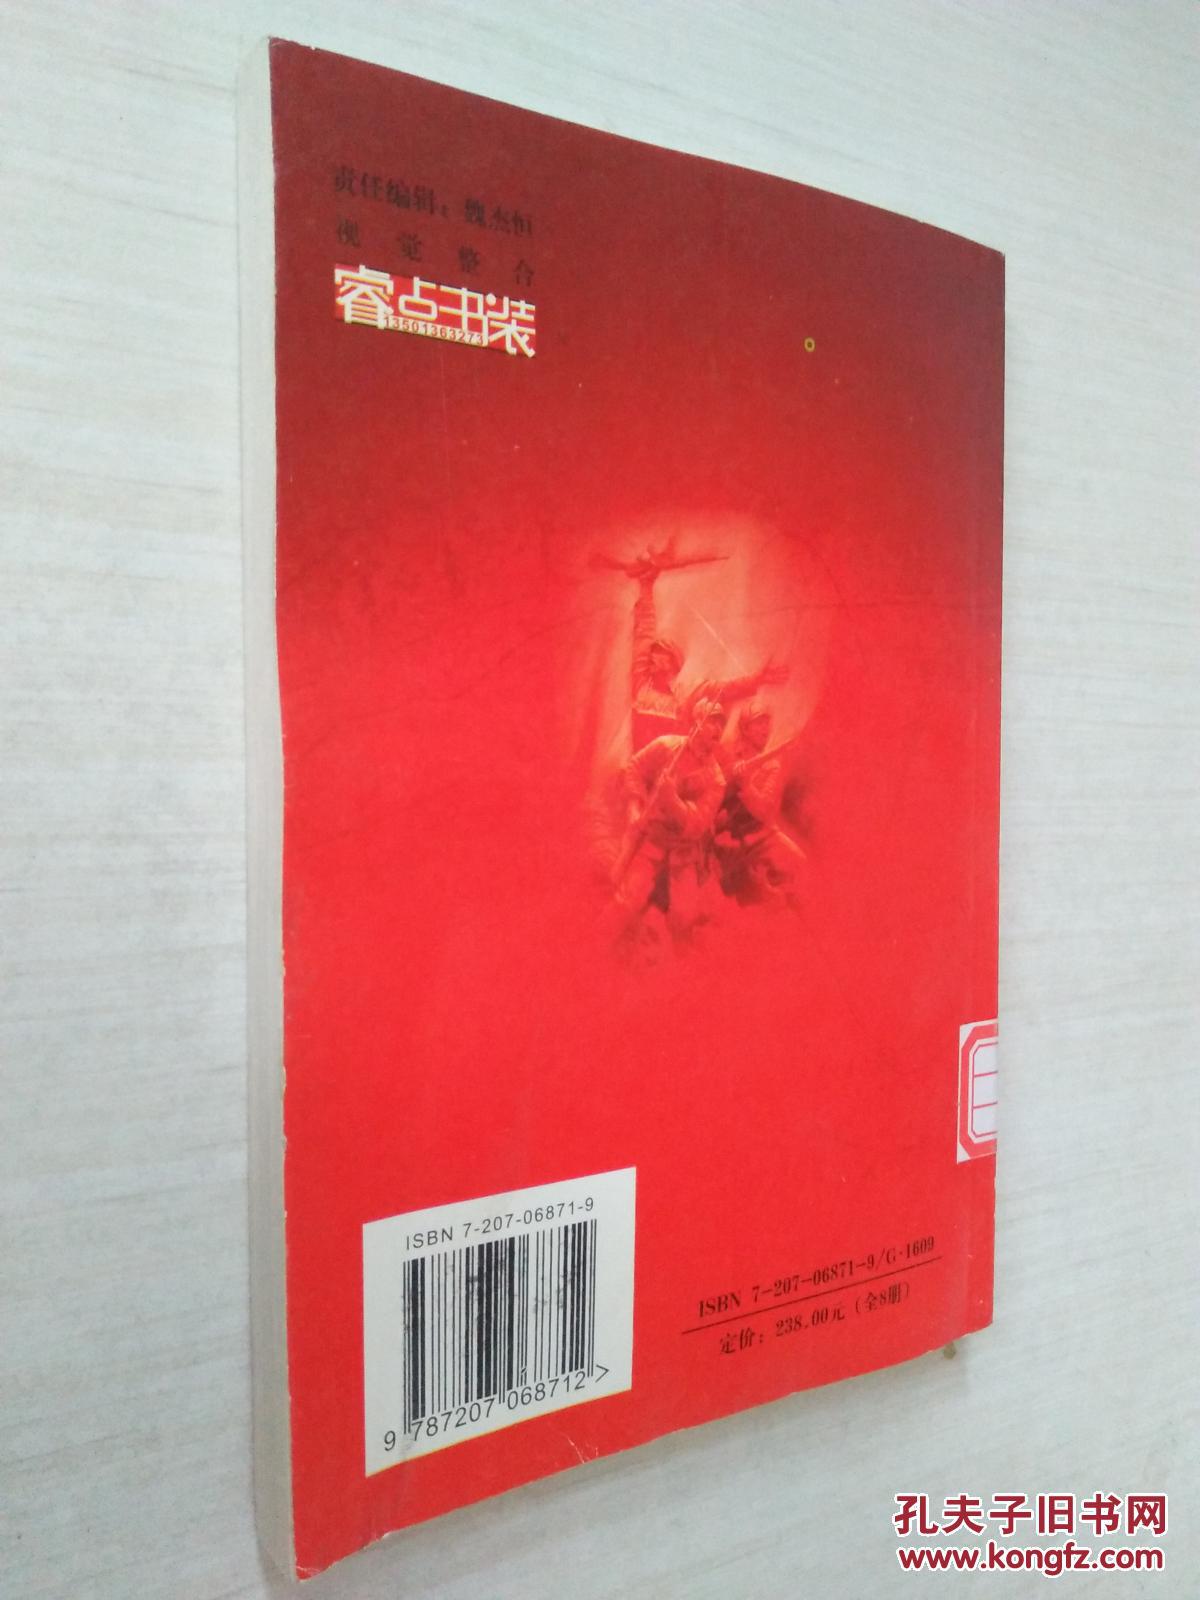 【图】红色之旅:百个爱国主义教育基地. 北京市